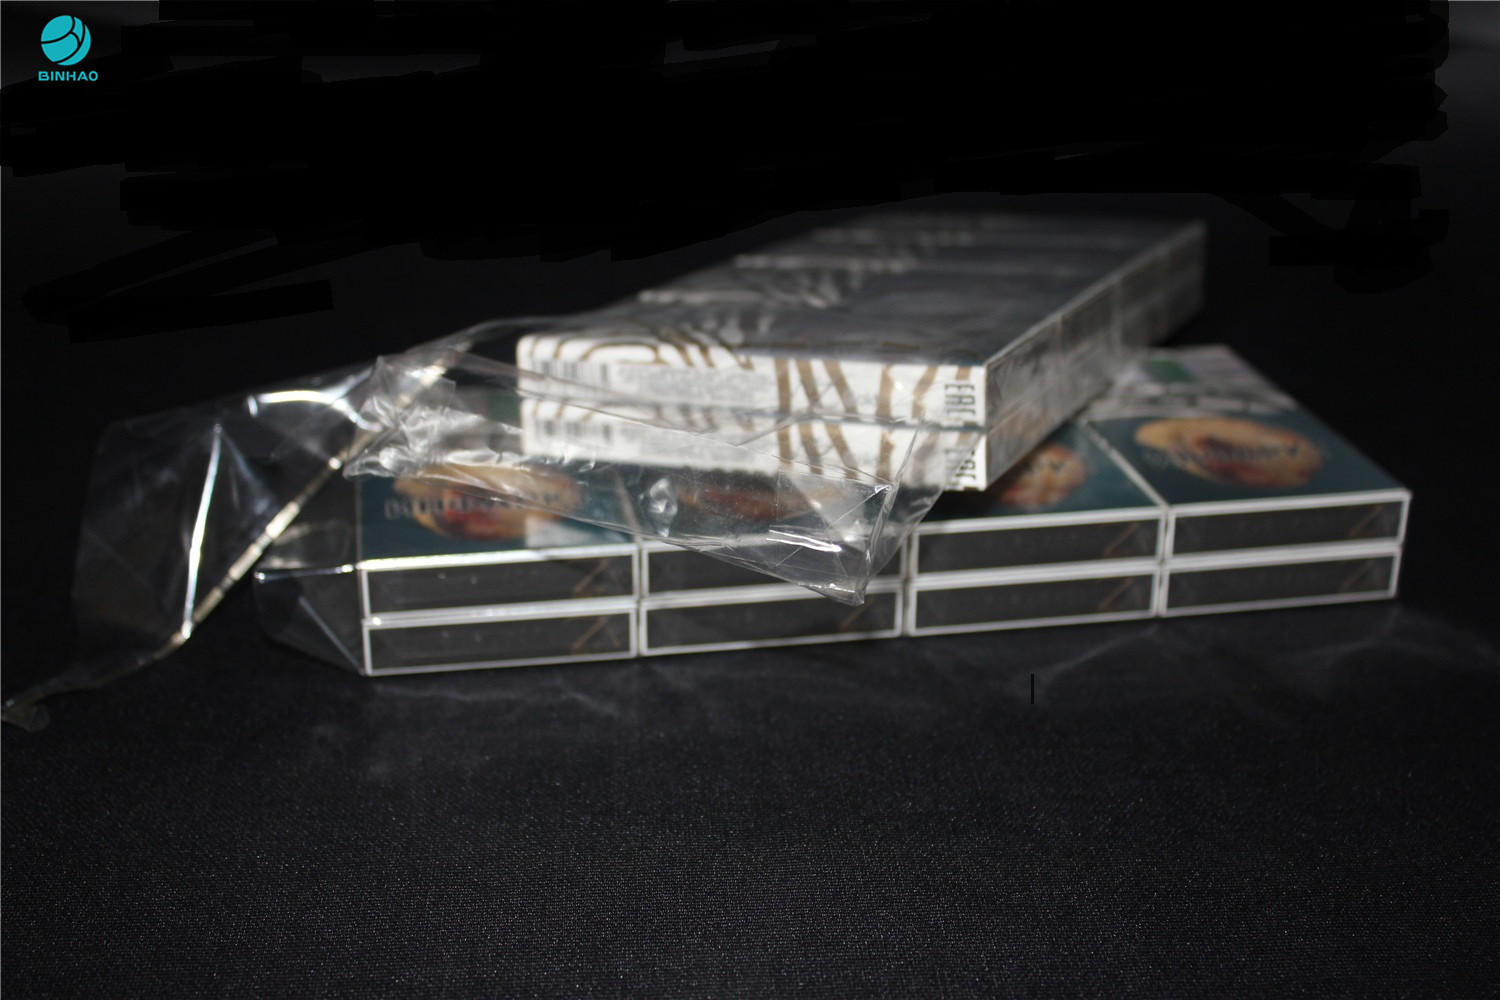 Film d'emballage de PVC de rétrécissement de 25 microns pour la boîte externe Wraper de cigarette nue